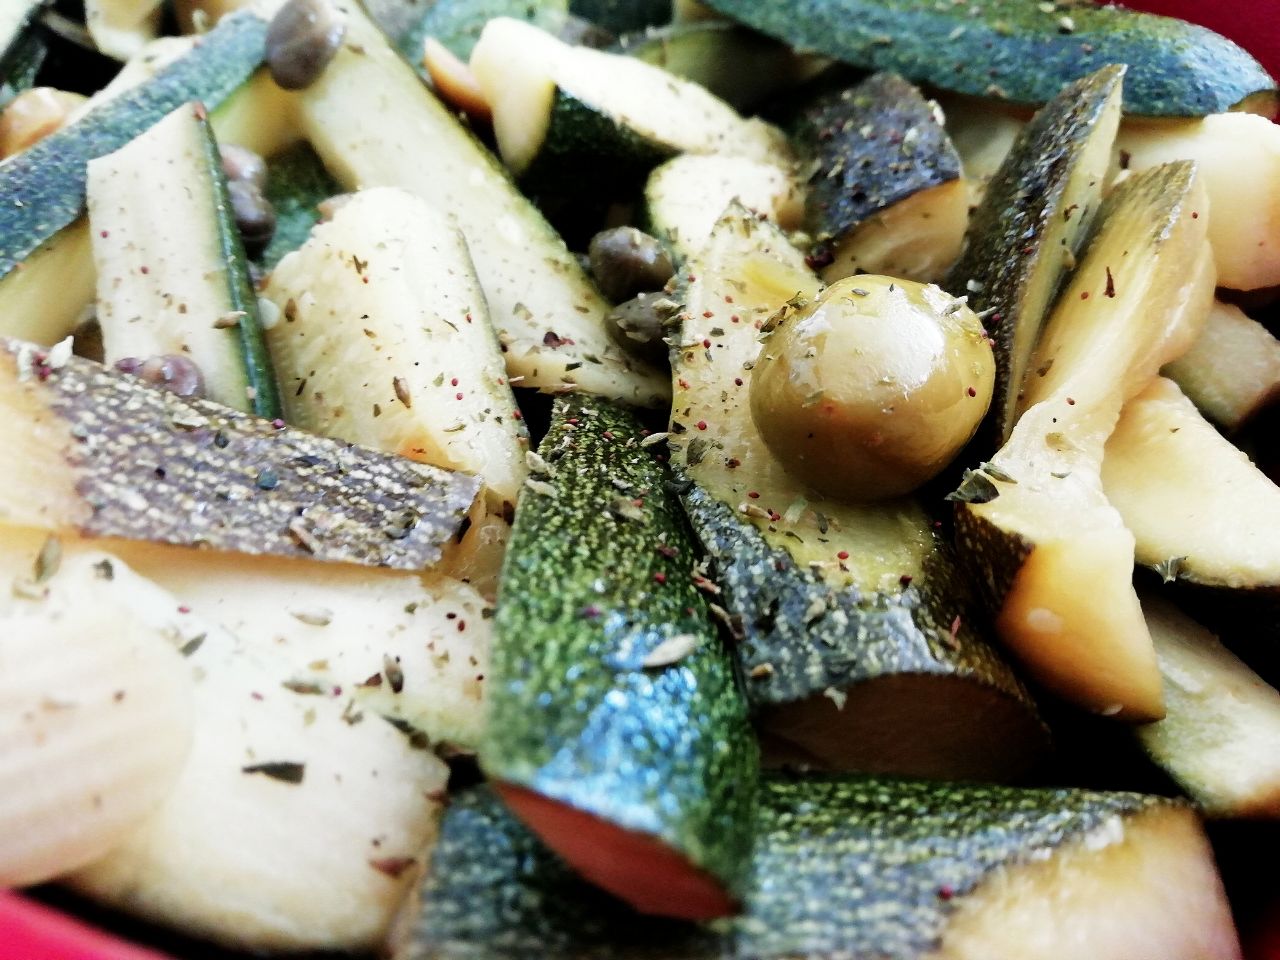 Contorni leggeri senza burro: zucchine con capperi olive verdi e origano all'olio evo!